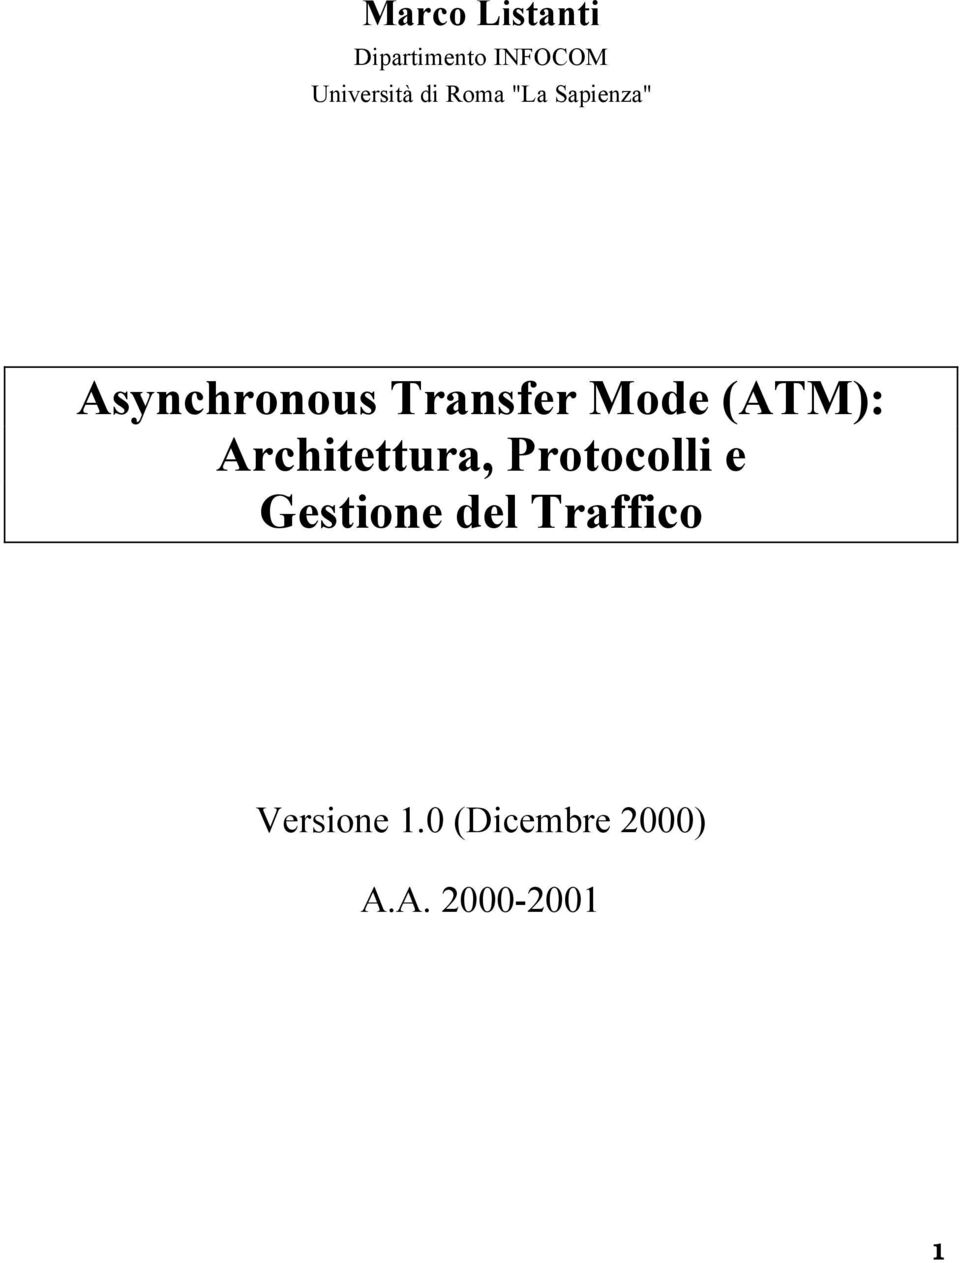 (ATM): Architettura, Protocolli e Gestione del